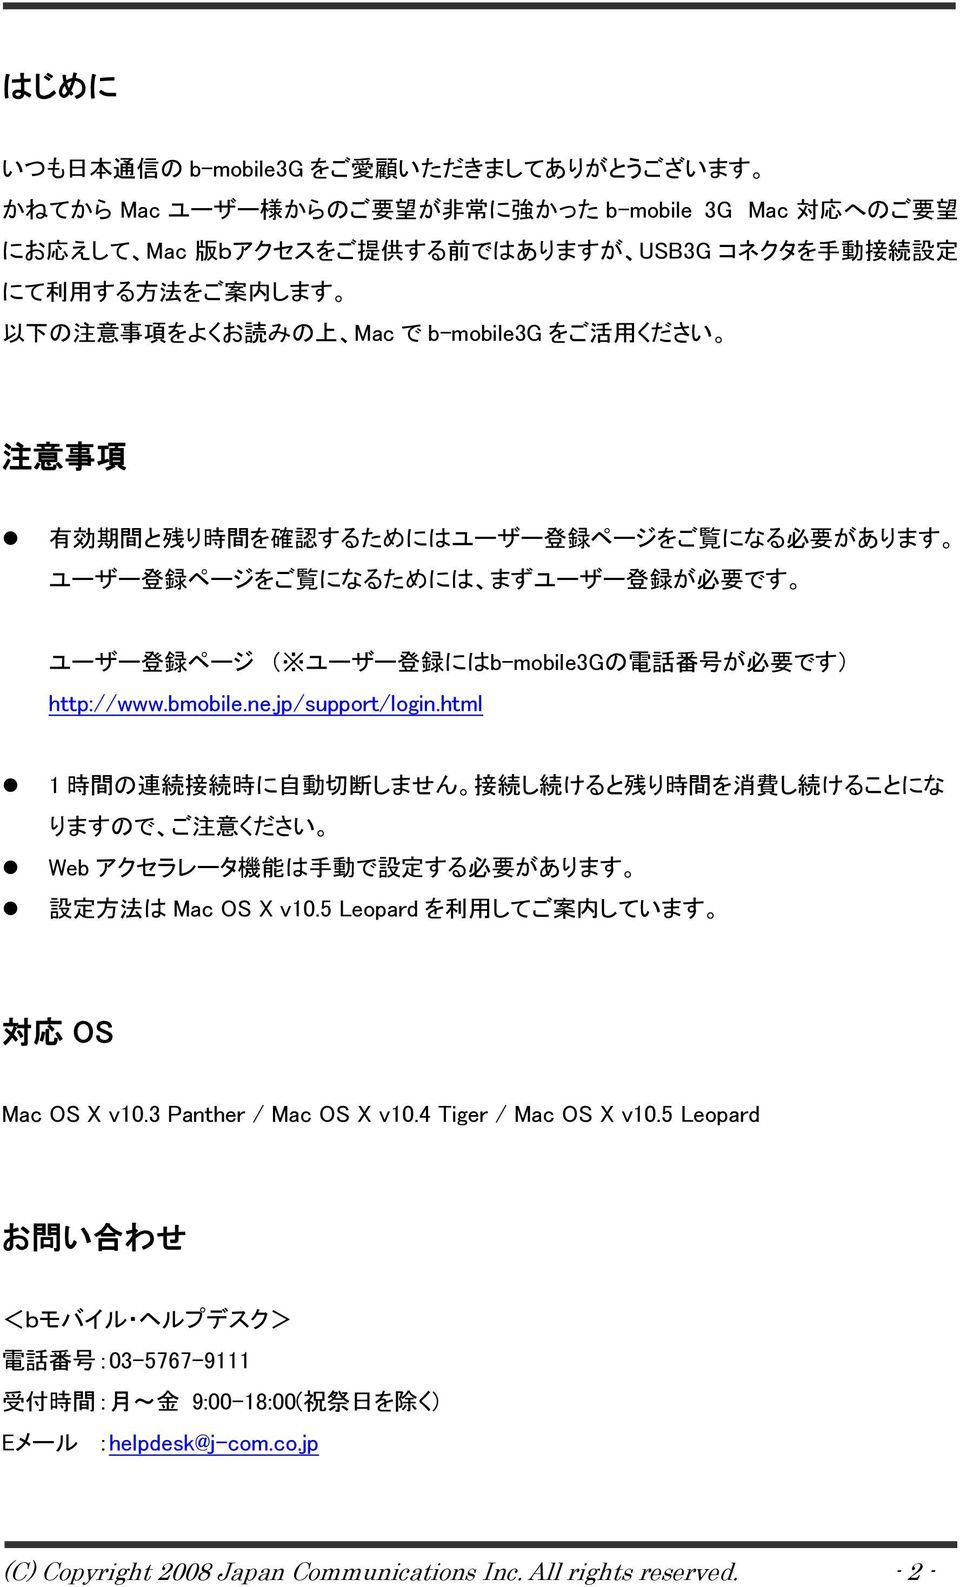 ユーザー 登 録 にはb-mobile3Gの 電 話 番 号 が 必 要 です) http://www.bmobile.ne.jp/support/login.